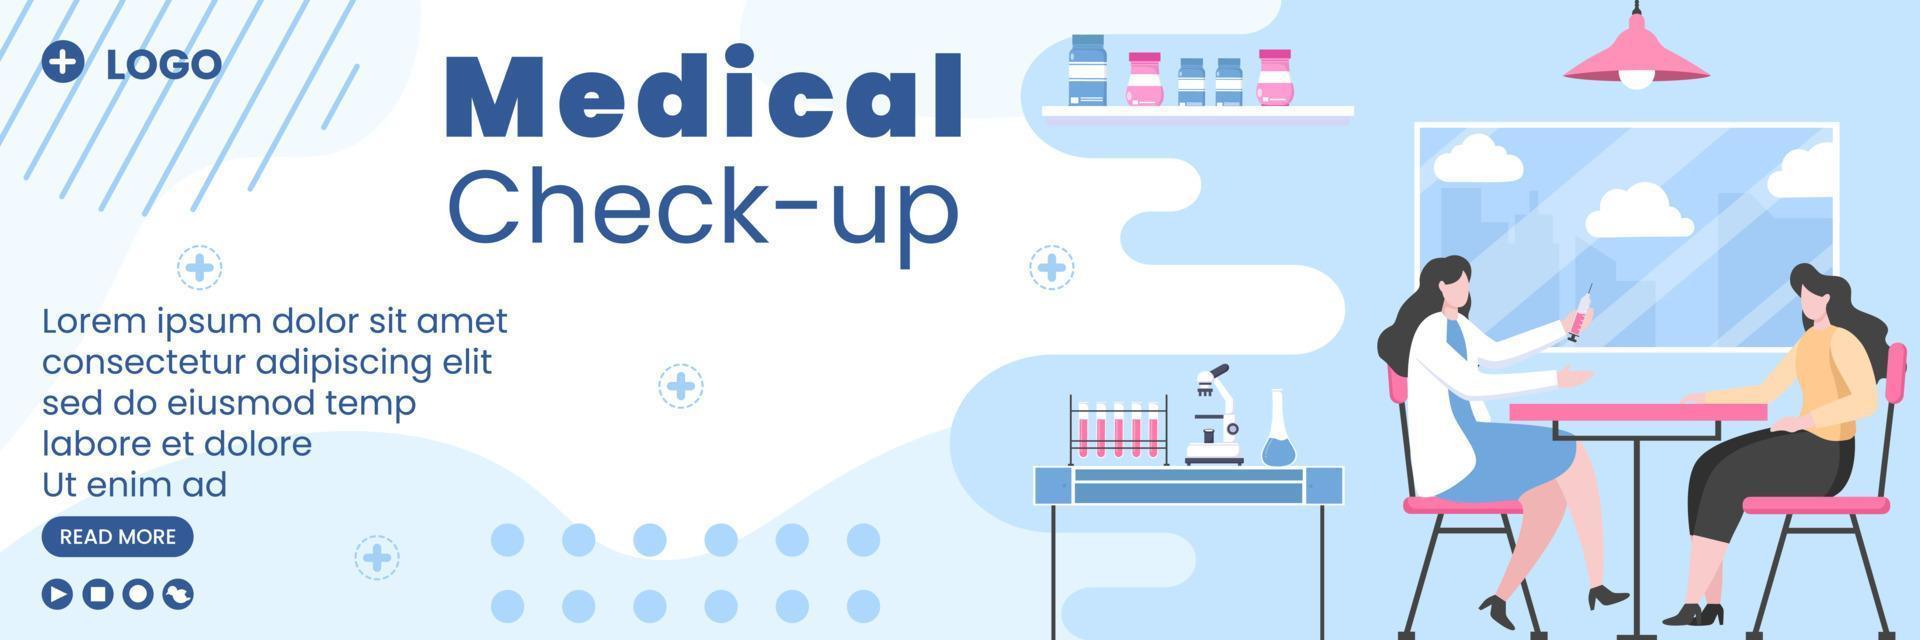 medische check-up voorbladsjabloon gezondheidszorg platte ontwerp illustratie bewerkbaar van vierkante achtergrond voor sociale media, wenskaart of web vector